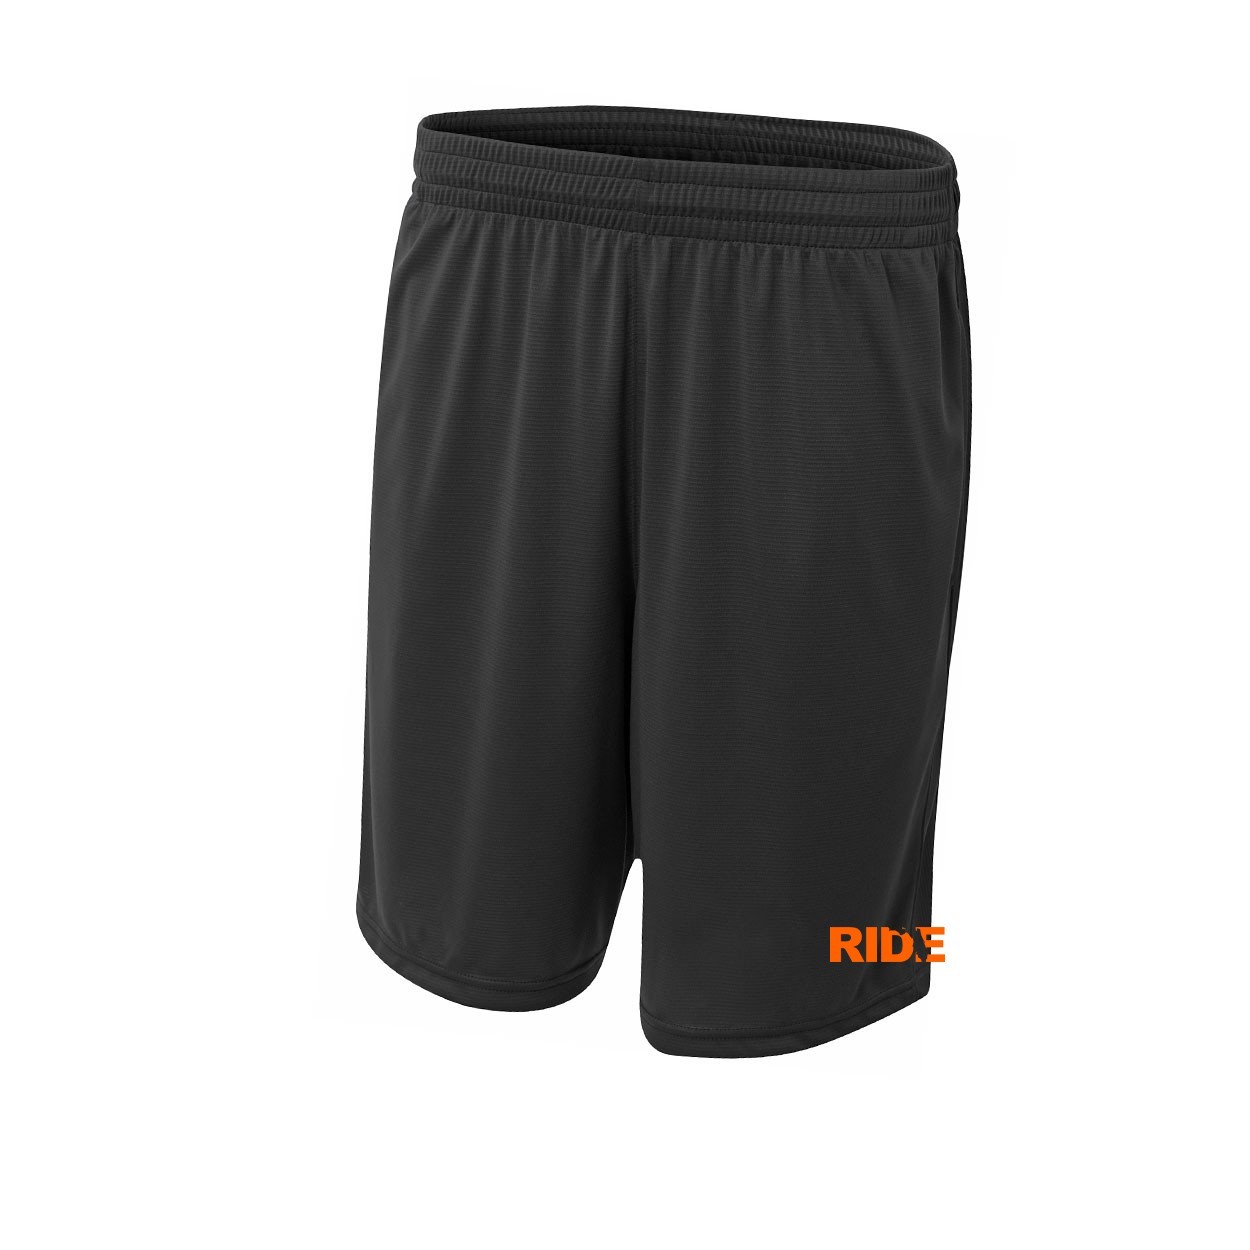 Ride Florida Classic Youth Unisex Shorts Black (Orange Logo)